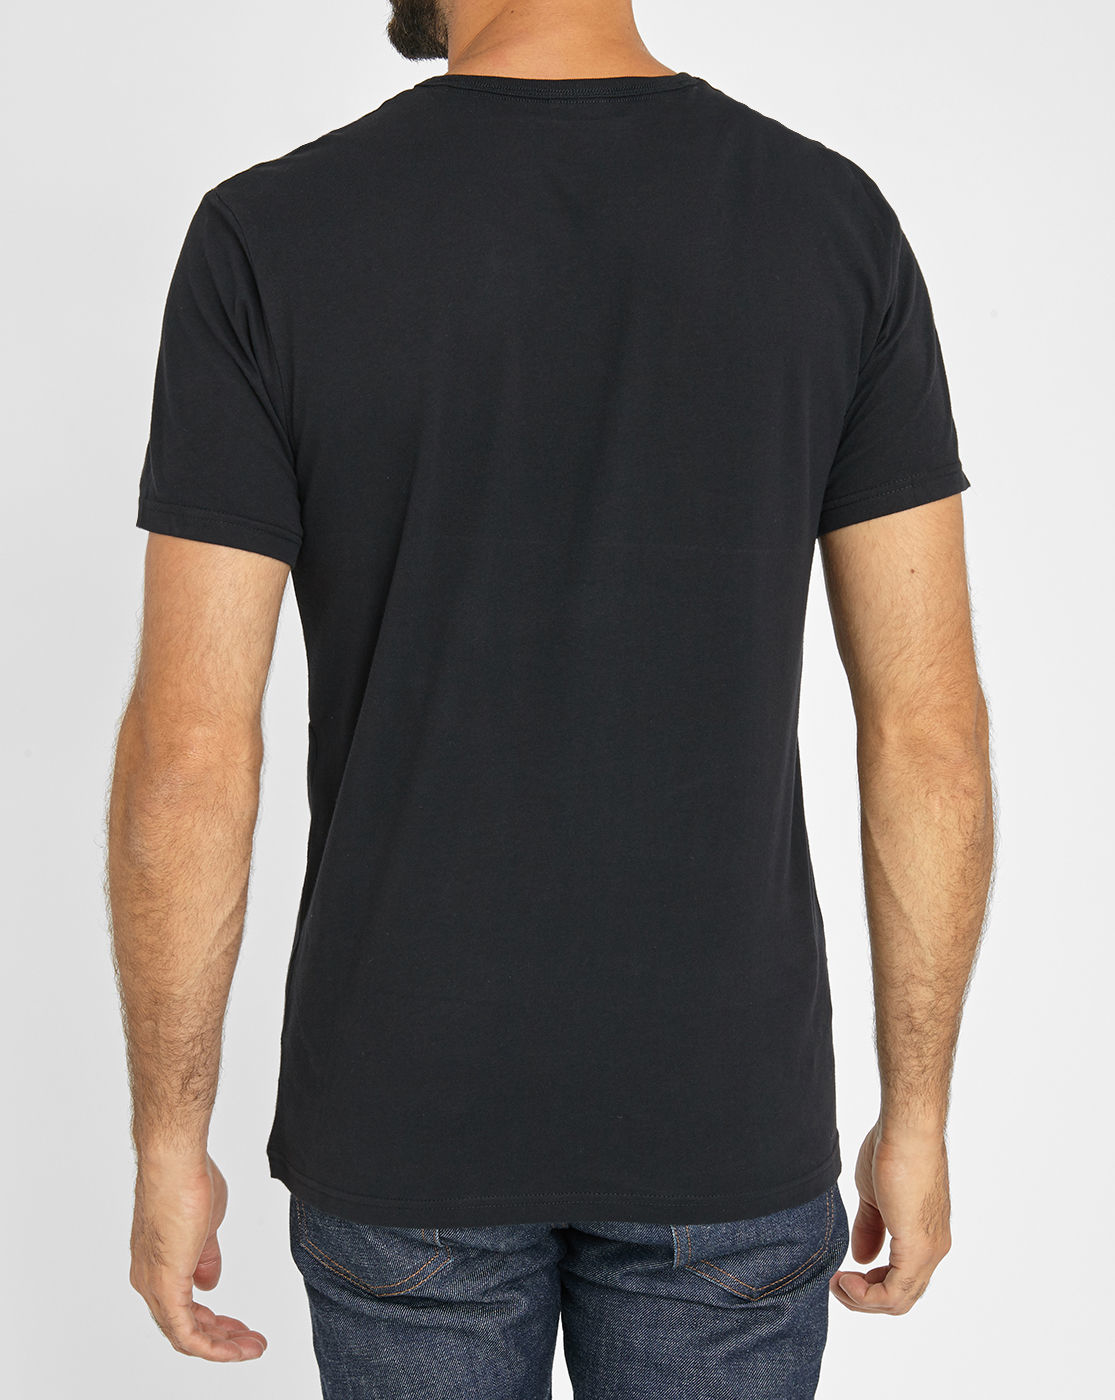 Calvin klein Black Ck Logo T-shirt in Black for Men | Lyst